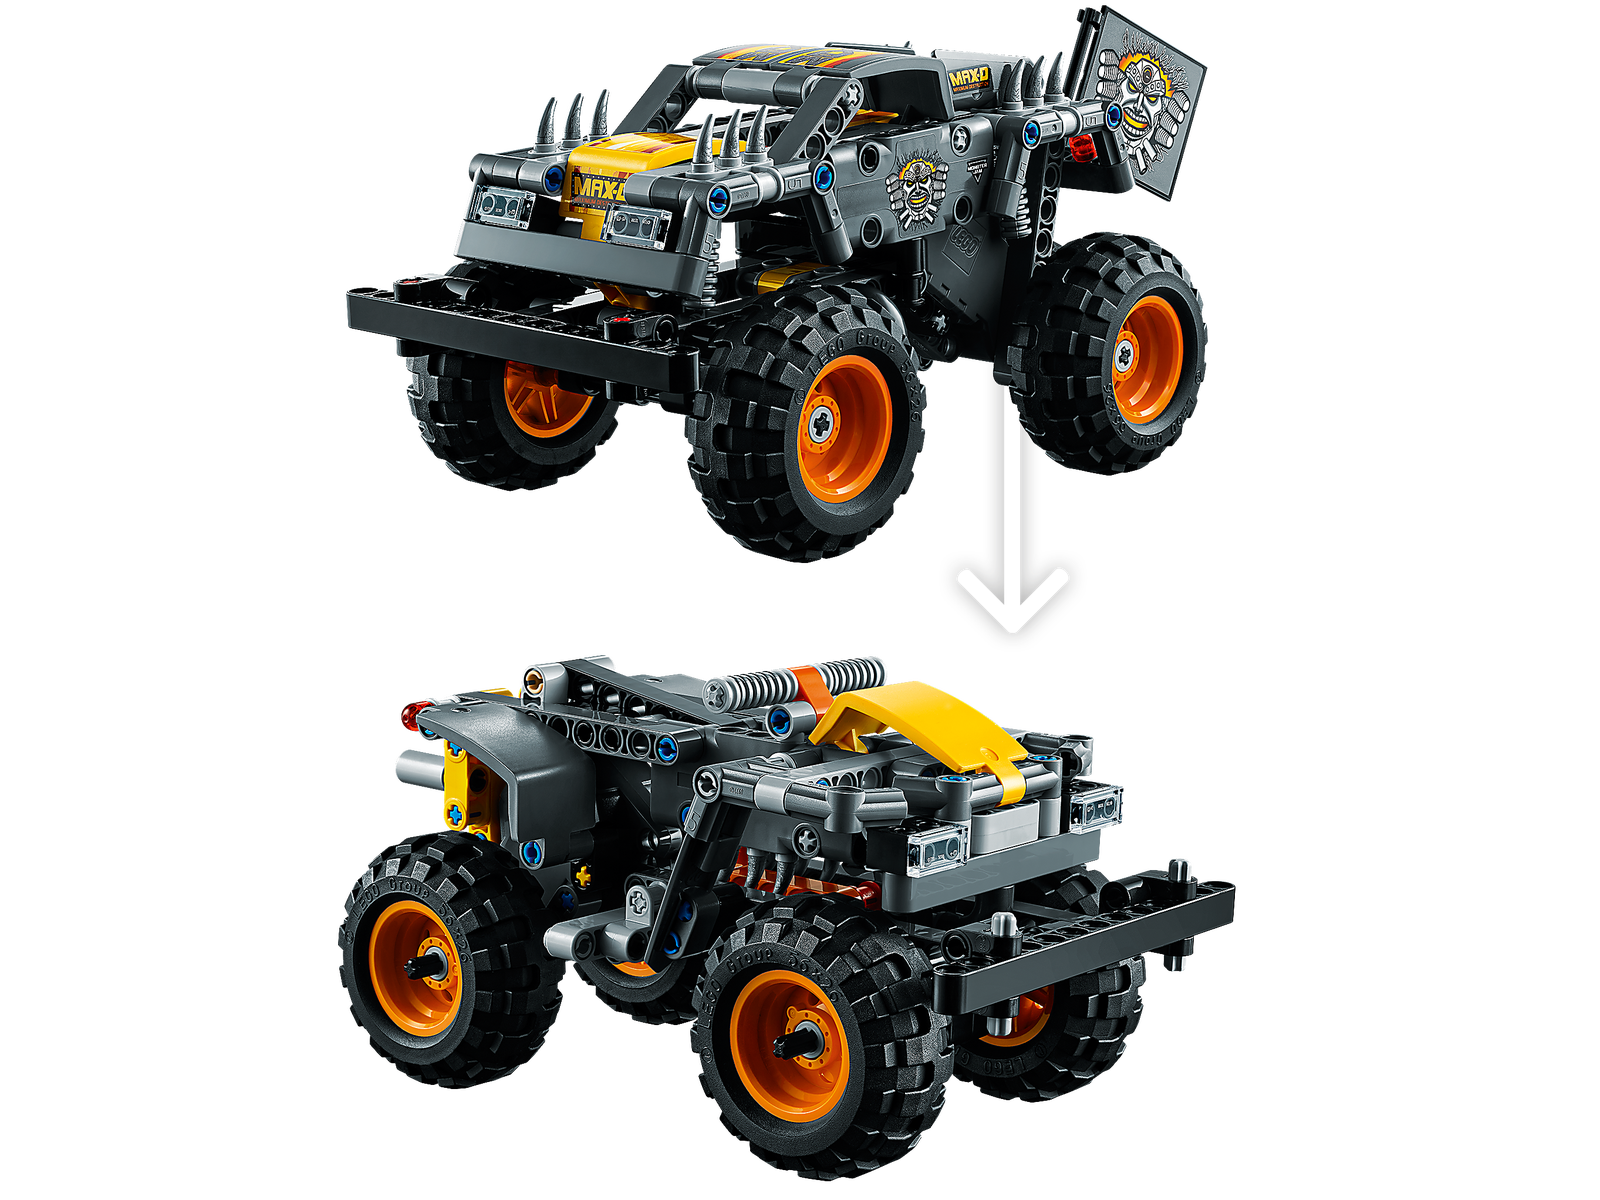 LEGO Technic Monster Jam Max-D 42119